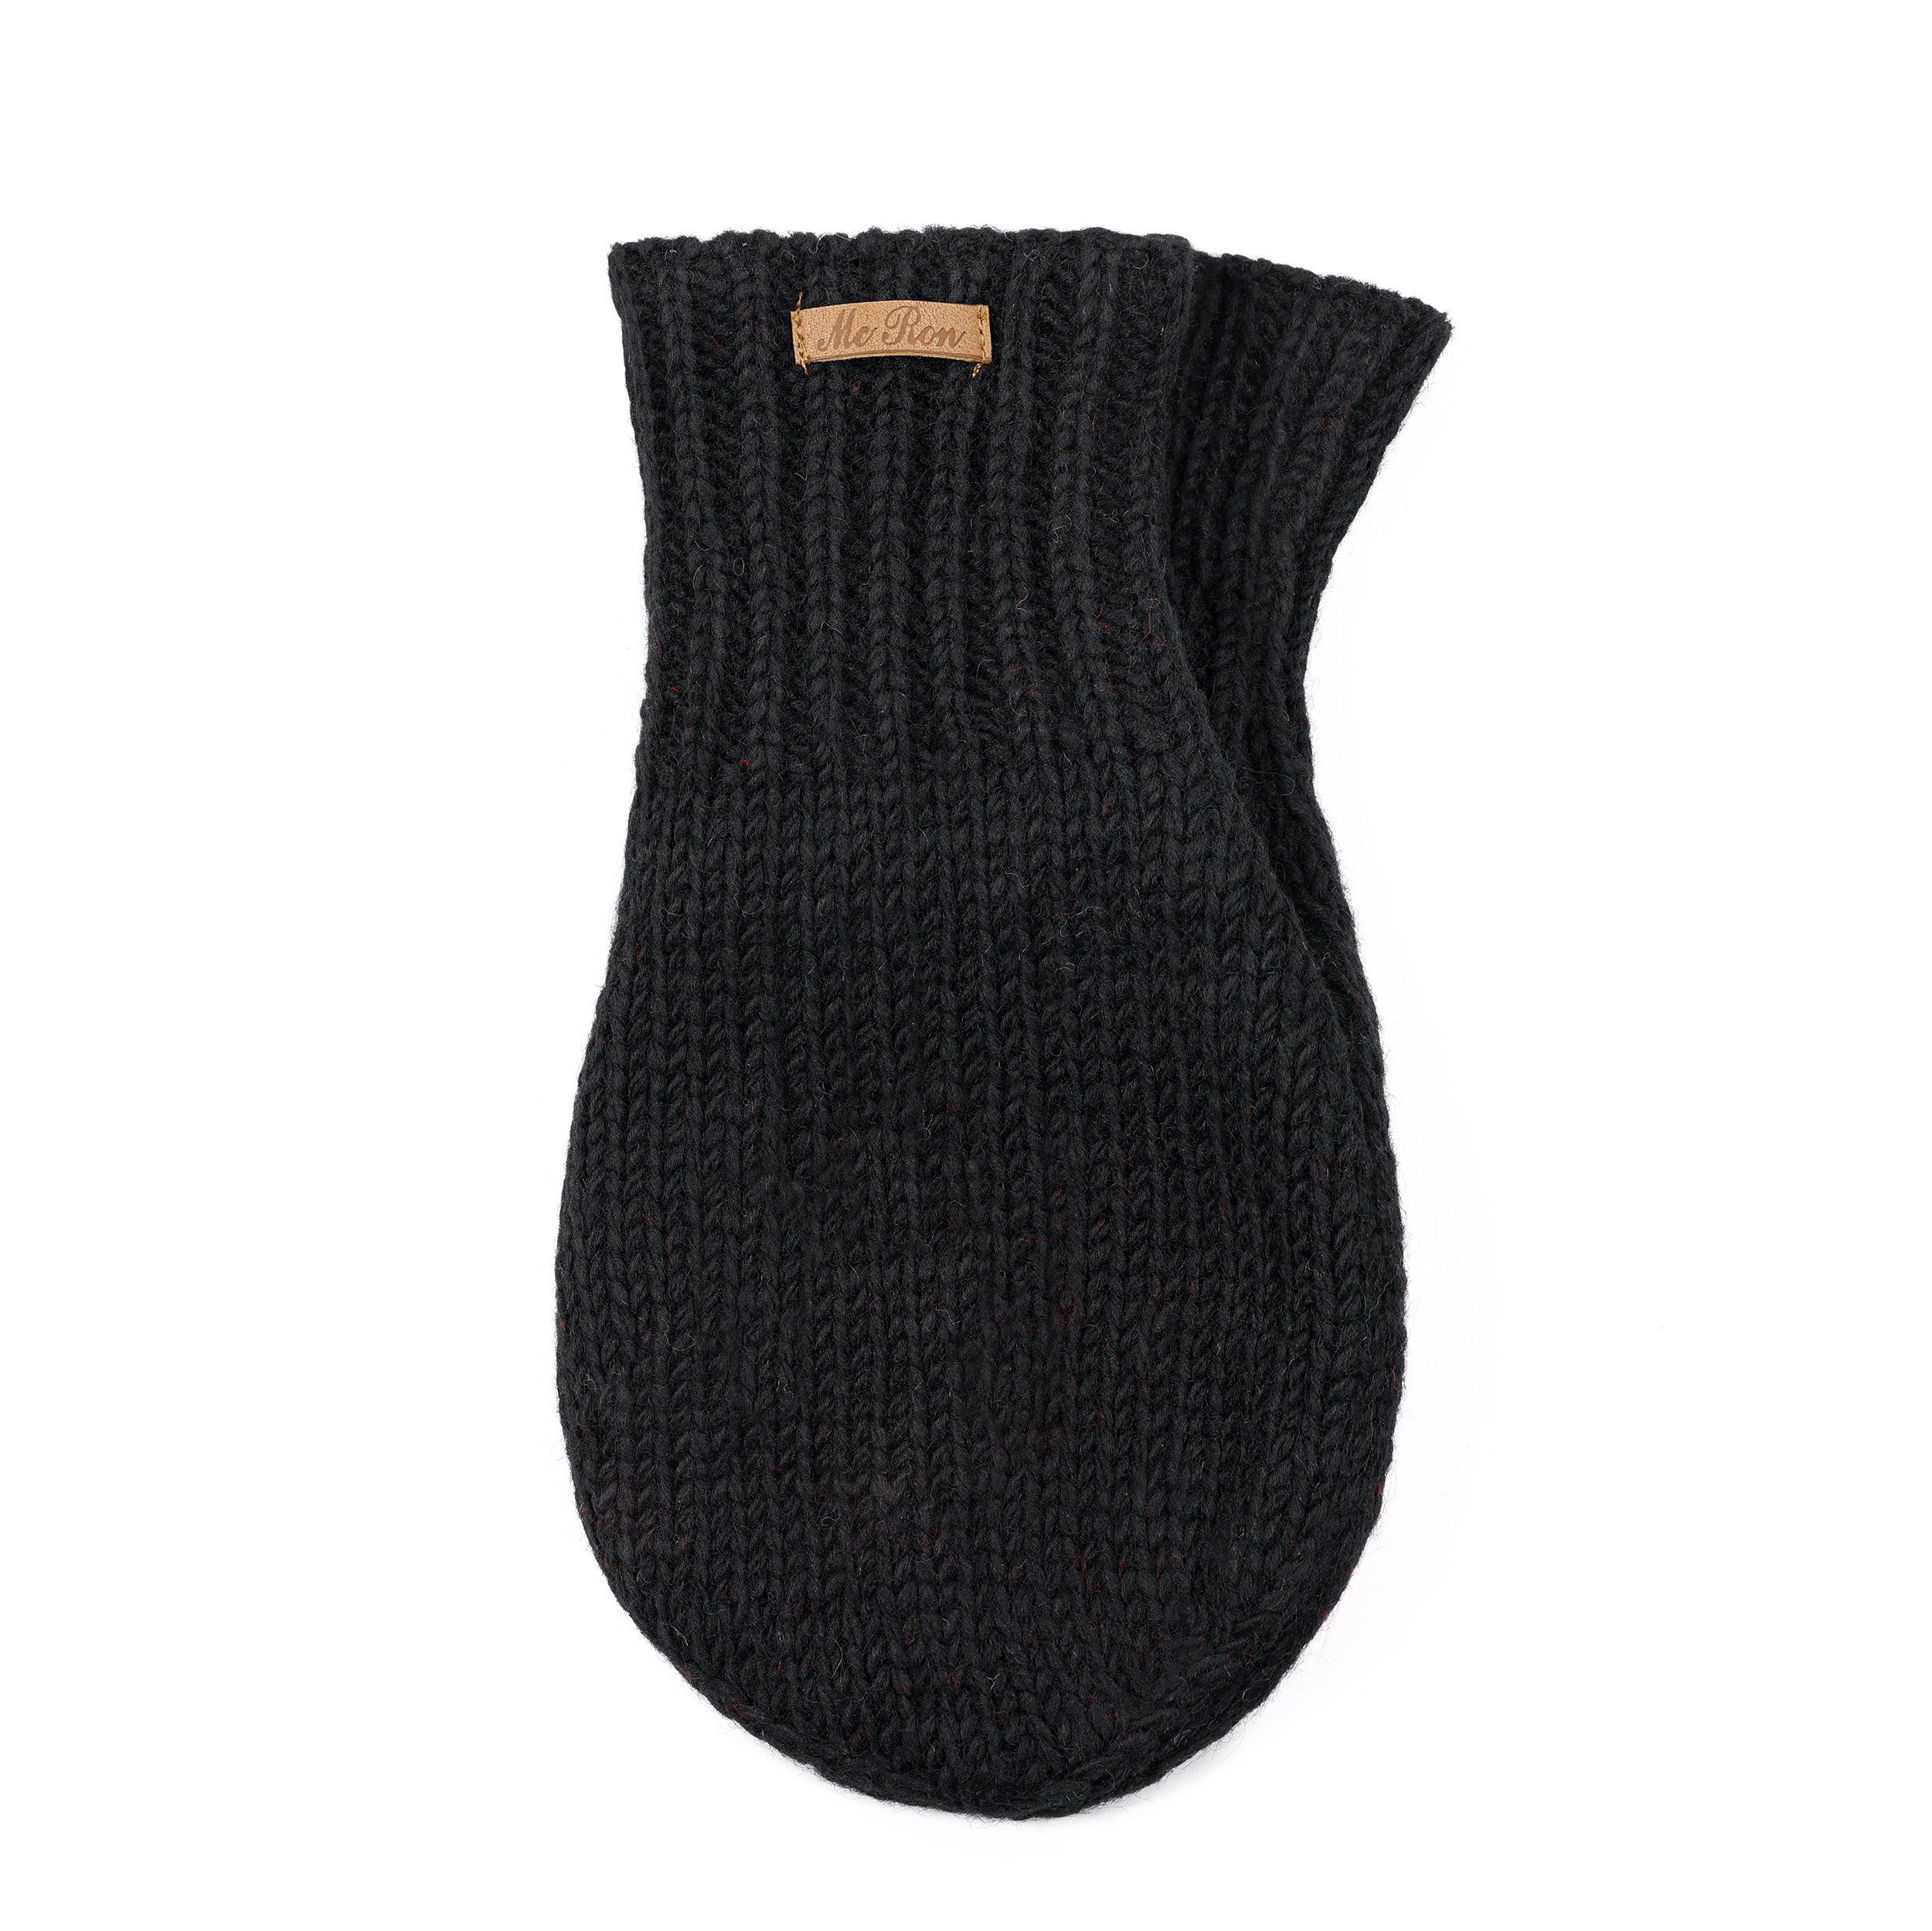 McRon Strickhandschuhe Pärchenhandschuh Modell Valentin Ein Handschuh zum Händchenhalten, komplett mit Fleece gefüttert Schwarz